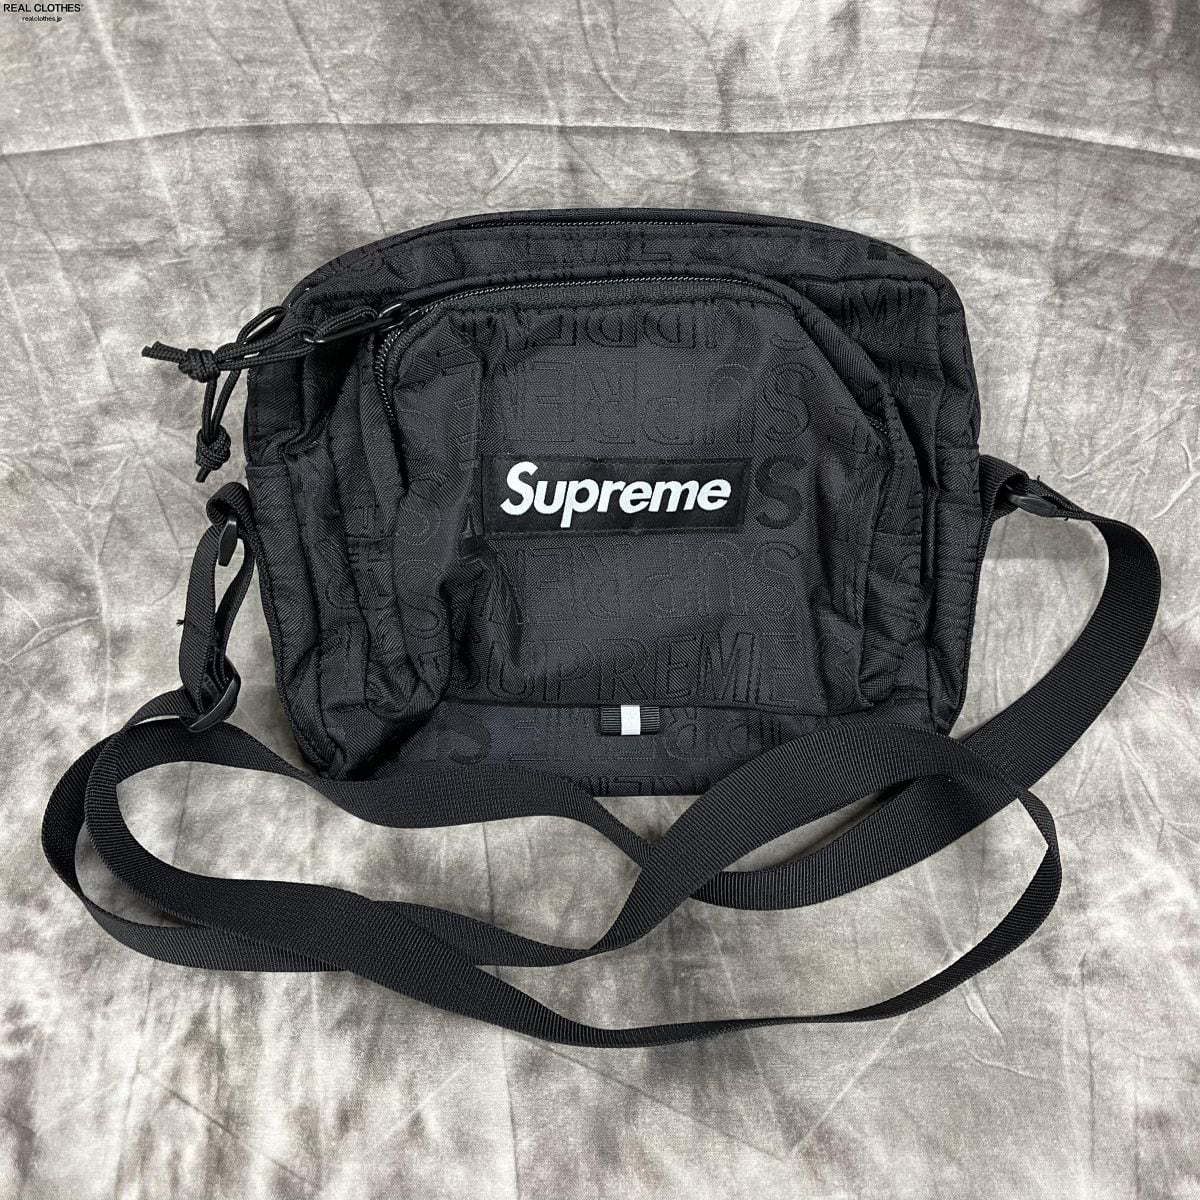 Supreme 19SS Shoulder Bag 黒